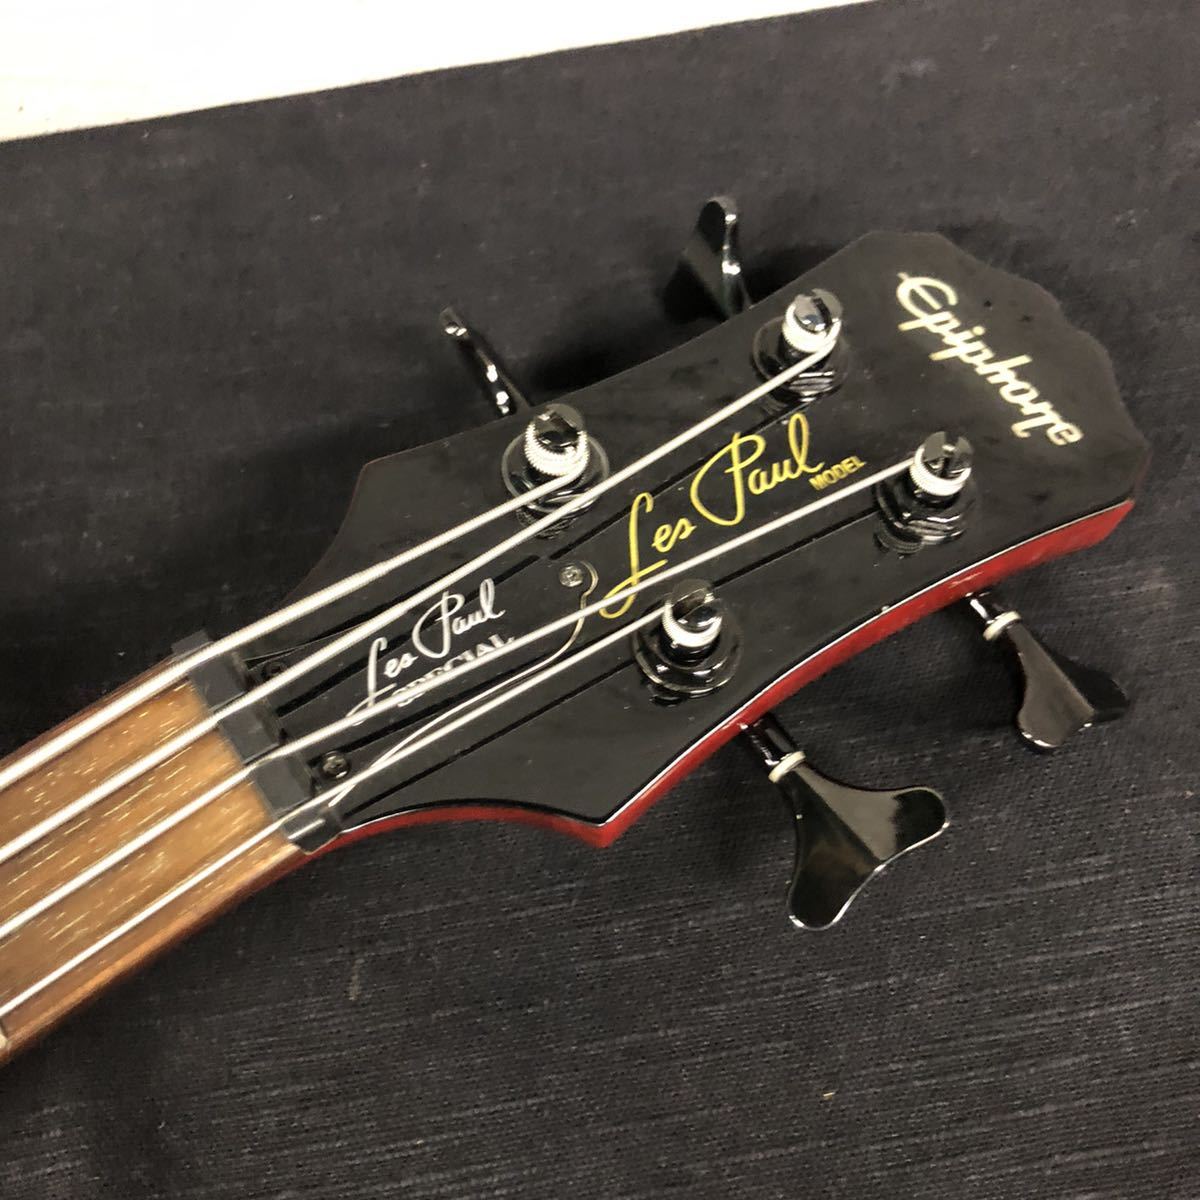 48 割引最新デザインの Gt 8 Re Epiphone Les Paul Special Bass レスポールベース 音出し確認済み エピフォン Bst19 本体 楽器 器材 ホビー カルチャー App Gimpanews Com